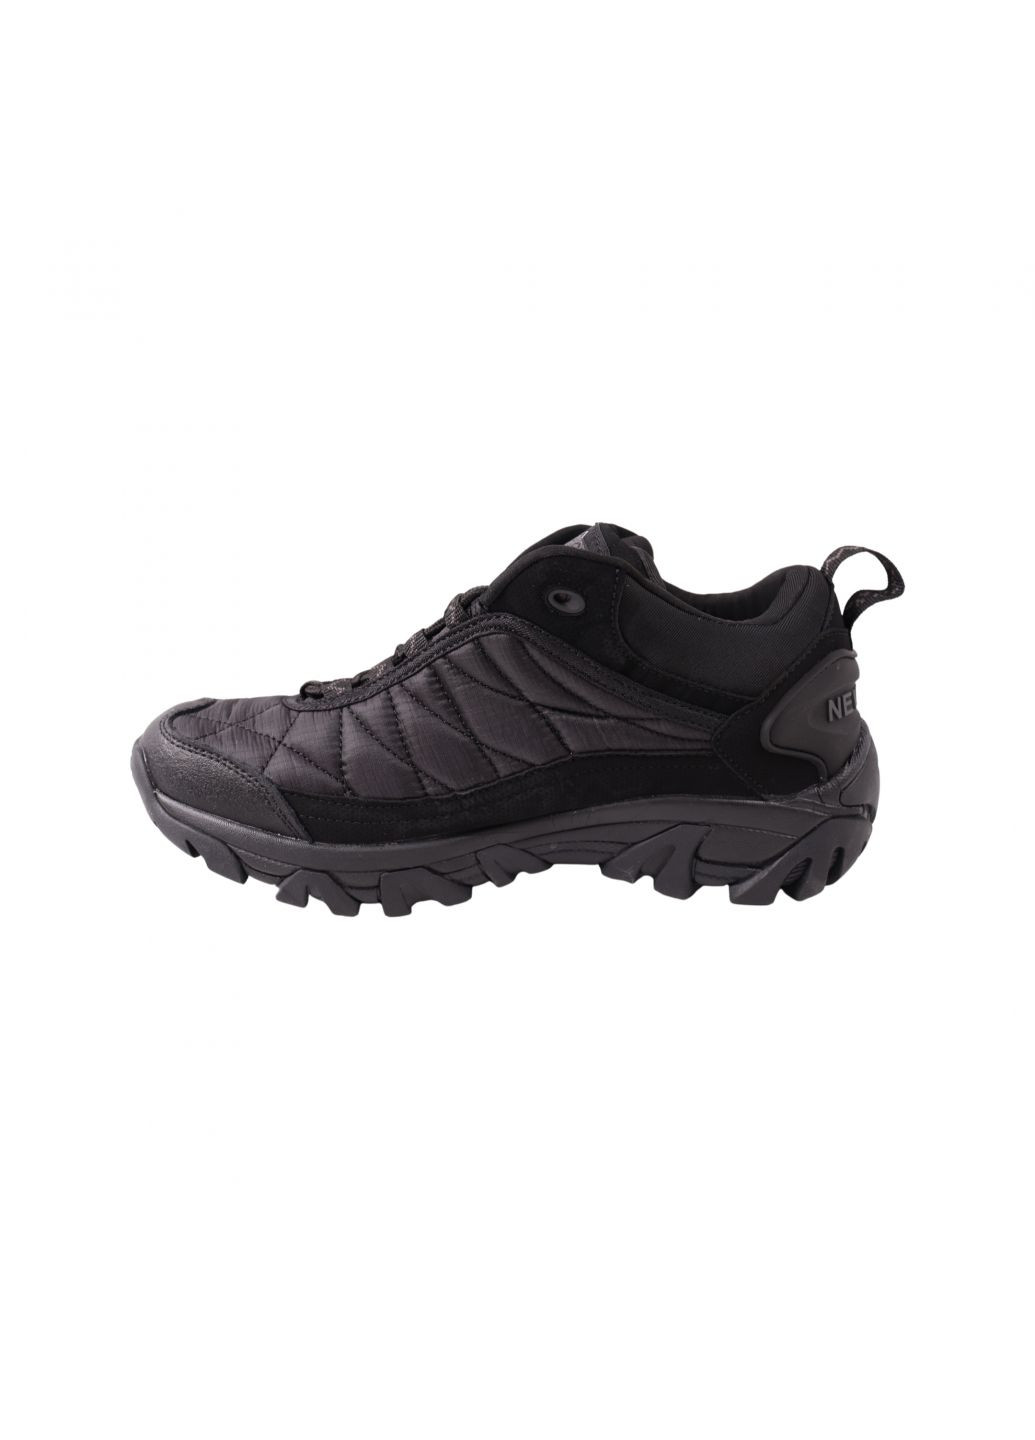 Чорні кросівки чоловічі чорні текстиль Yike 10-23DK